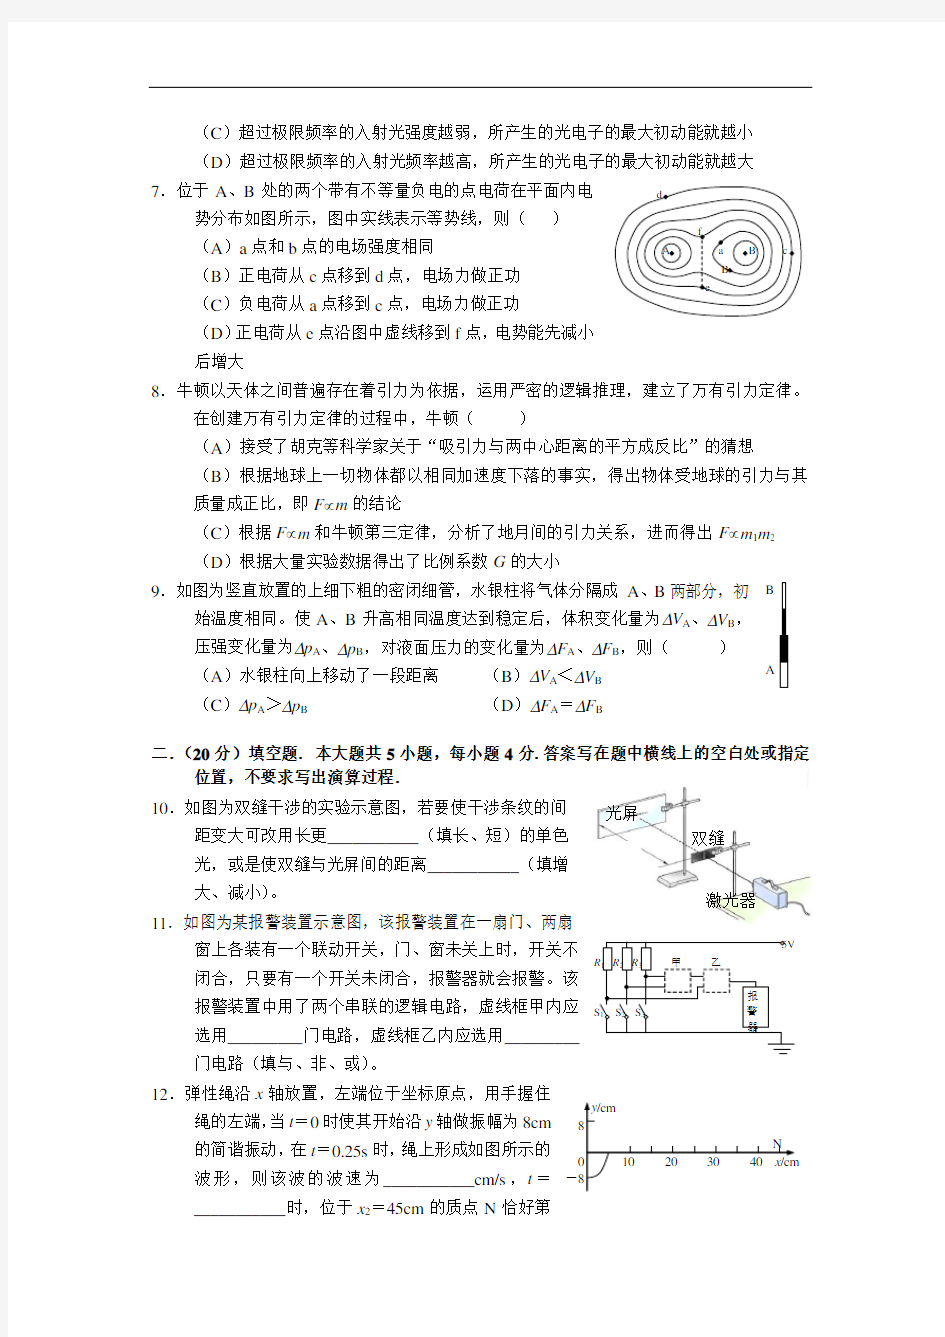 2009年高考物理试卷(上海卷)